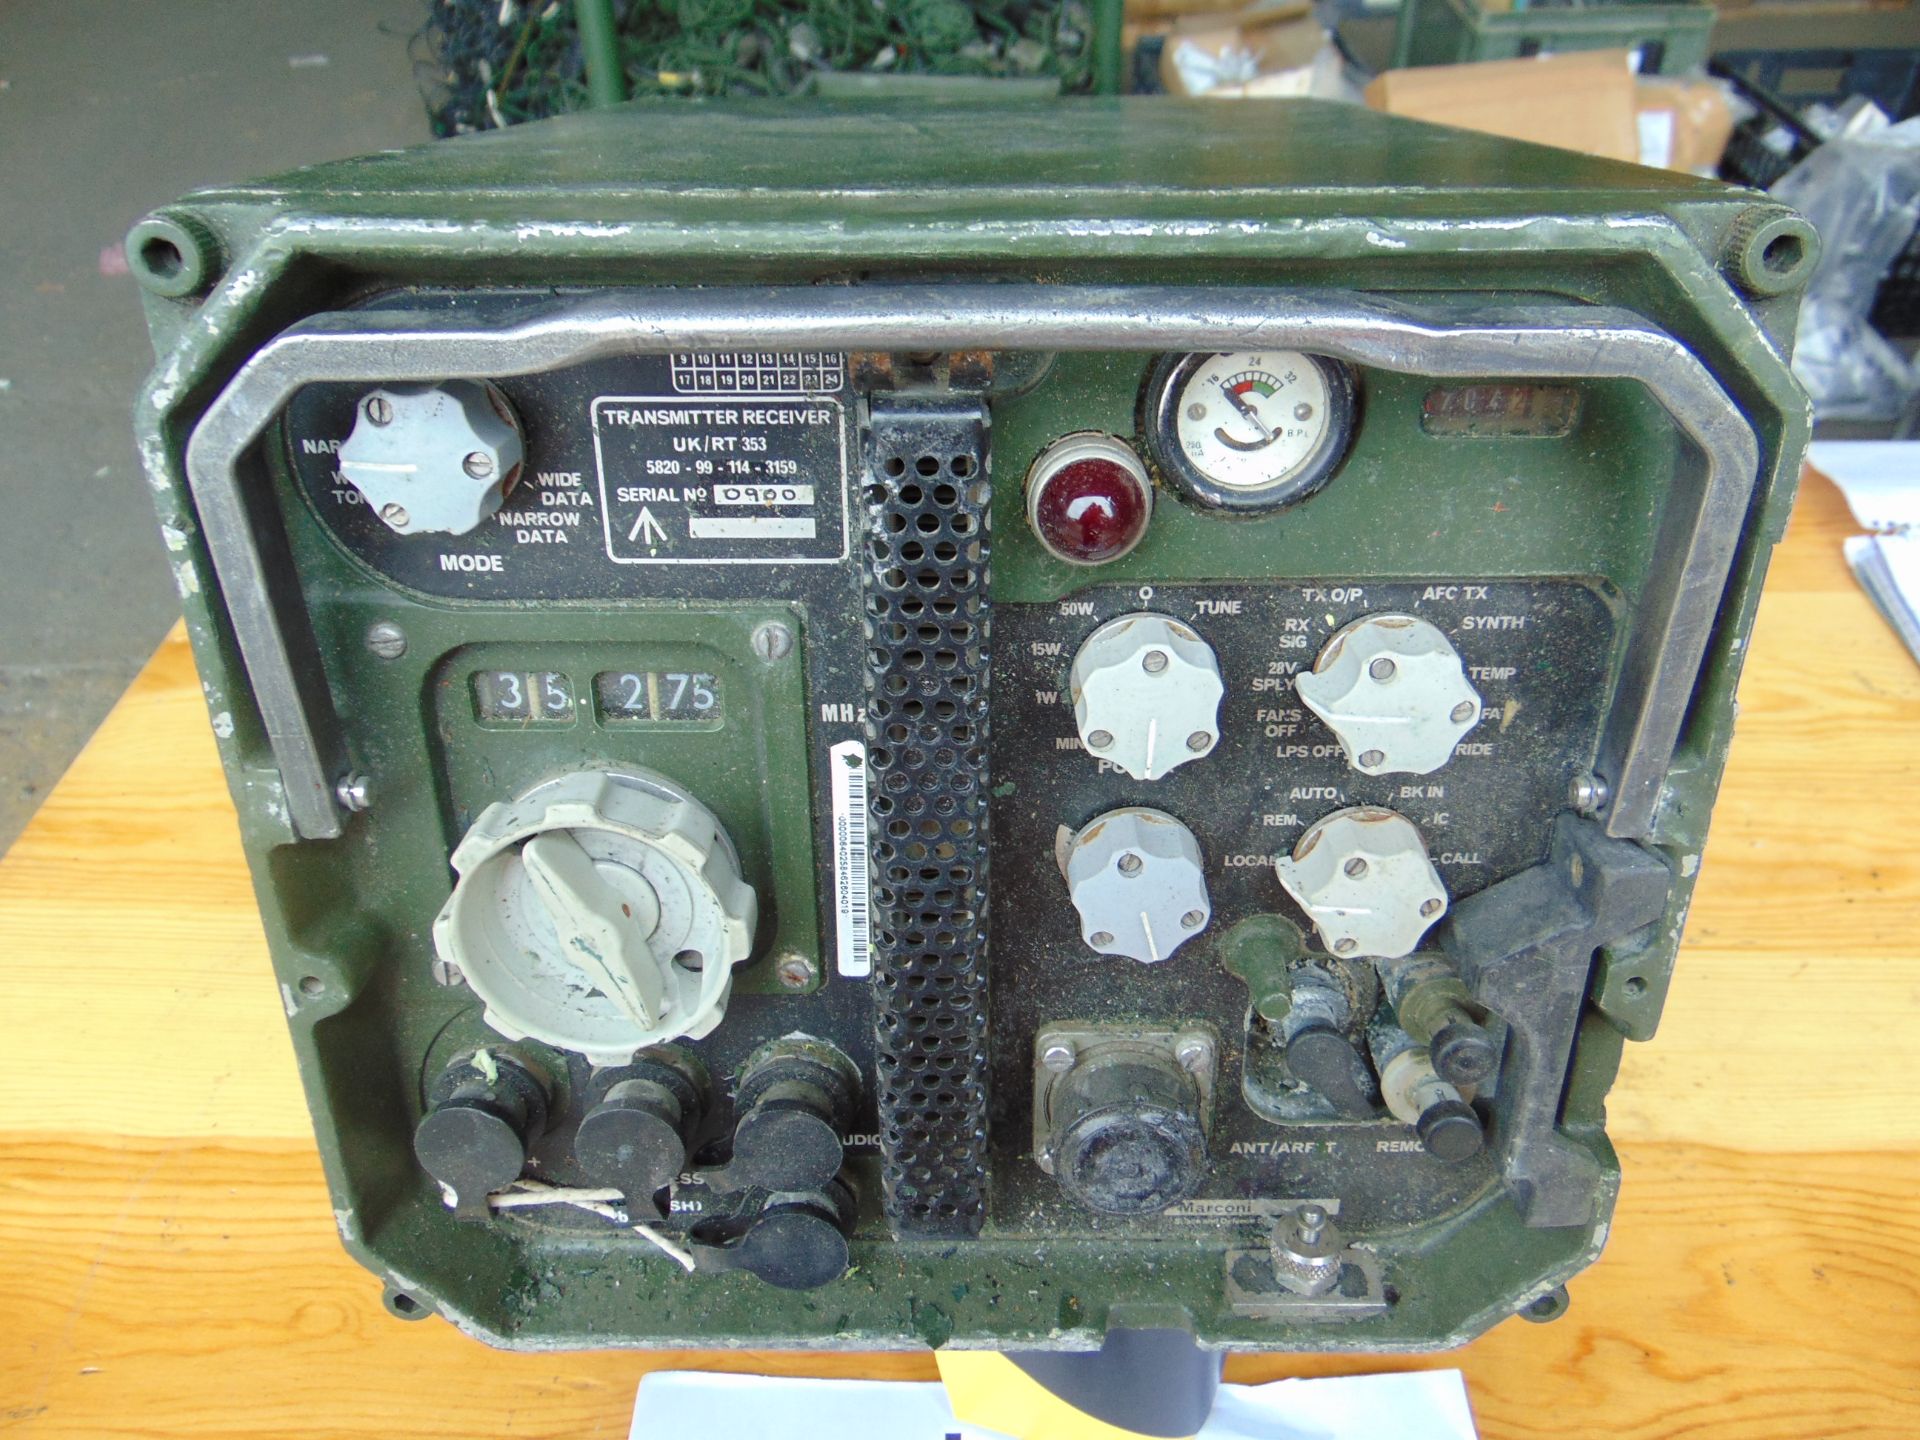 Clansman UK/RT 353 VHF Transmitter Receiver - Image 2 of 5